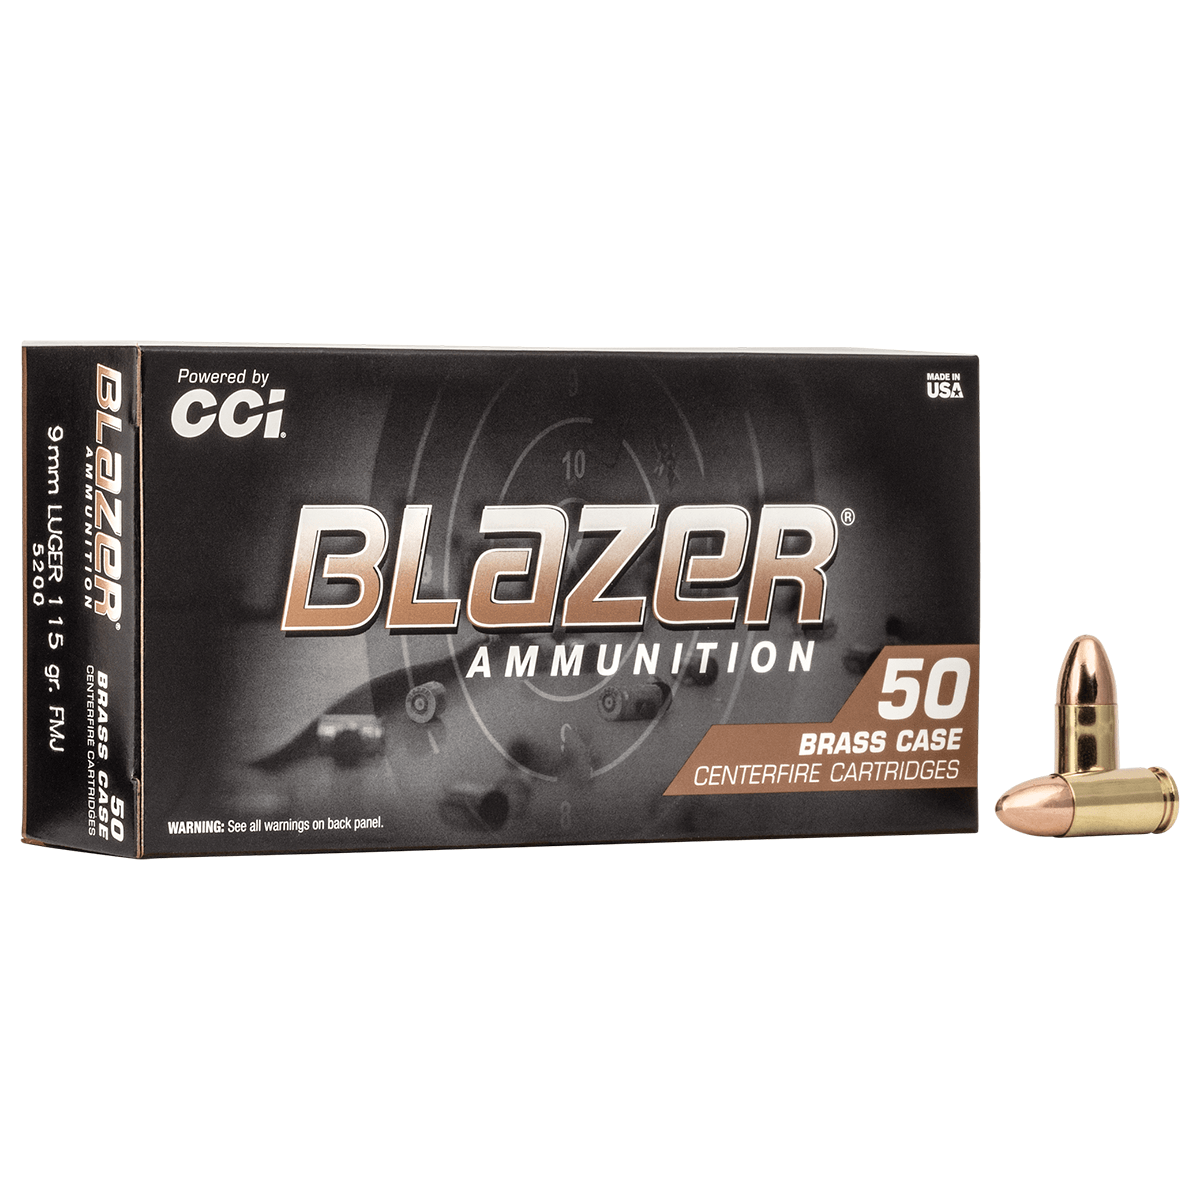 Blazer Brass 9mm Luger Ammo 115 Grain FMJ Ammunition (50 Rounds)